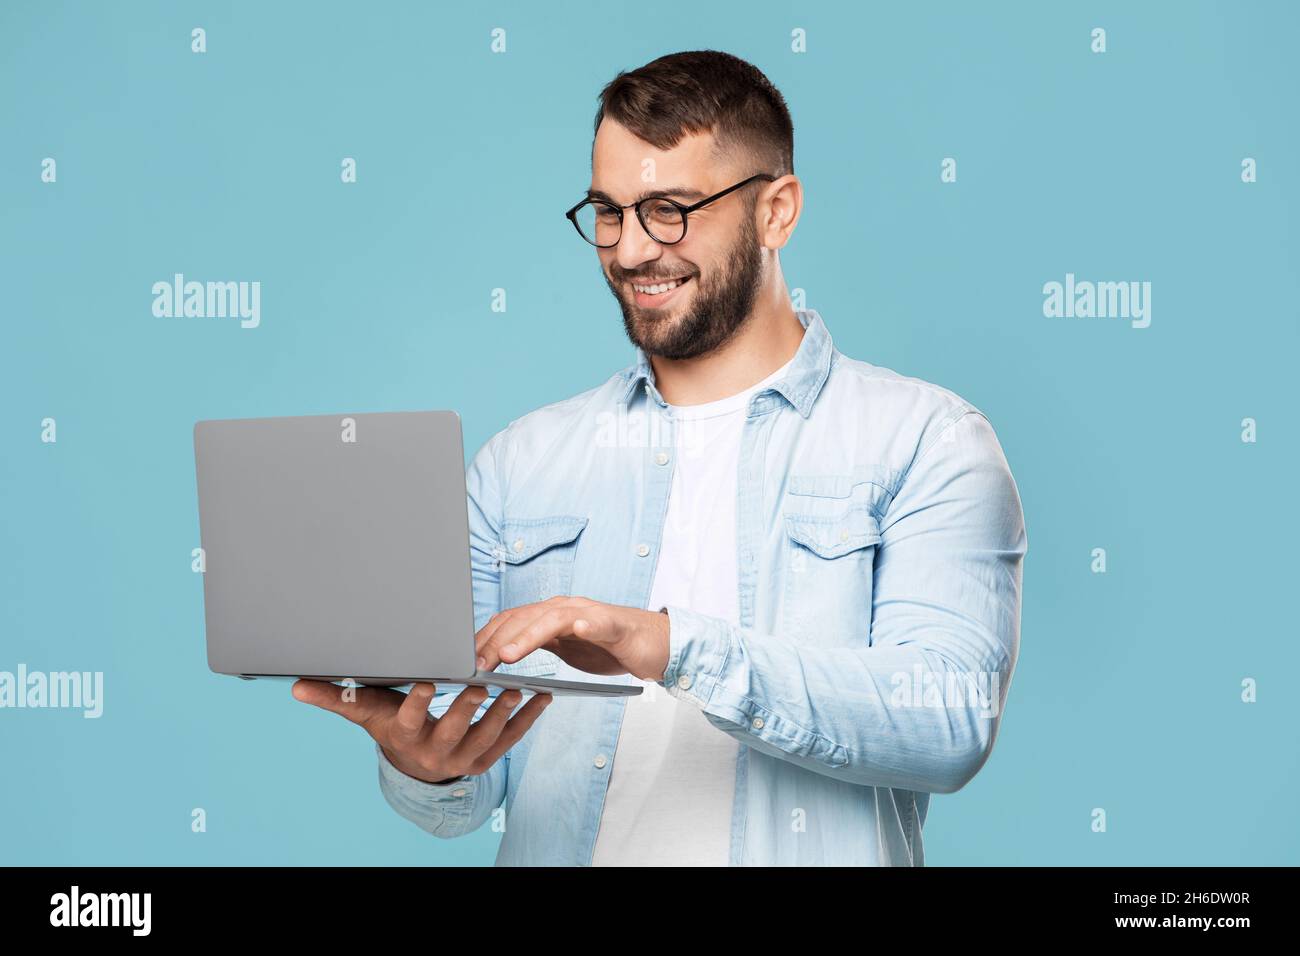 Lächelnd attraktiver erwachsener europäischer Mann in Brille, der am Computer tippt, funktioniert ferngesteuert, isoliert auf blauem Hintergrund Stockfoto